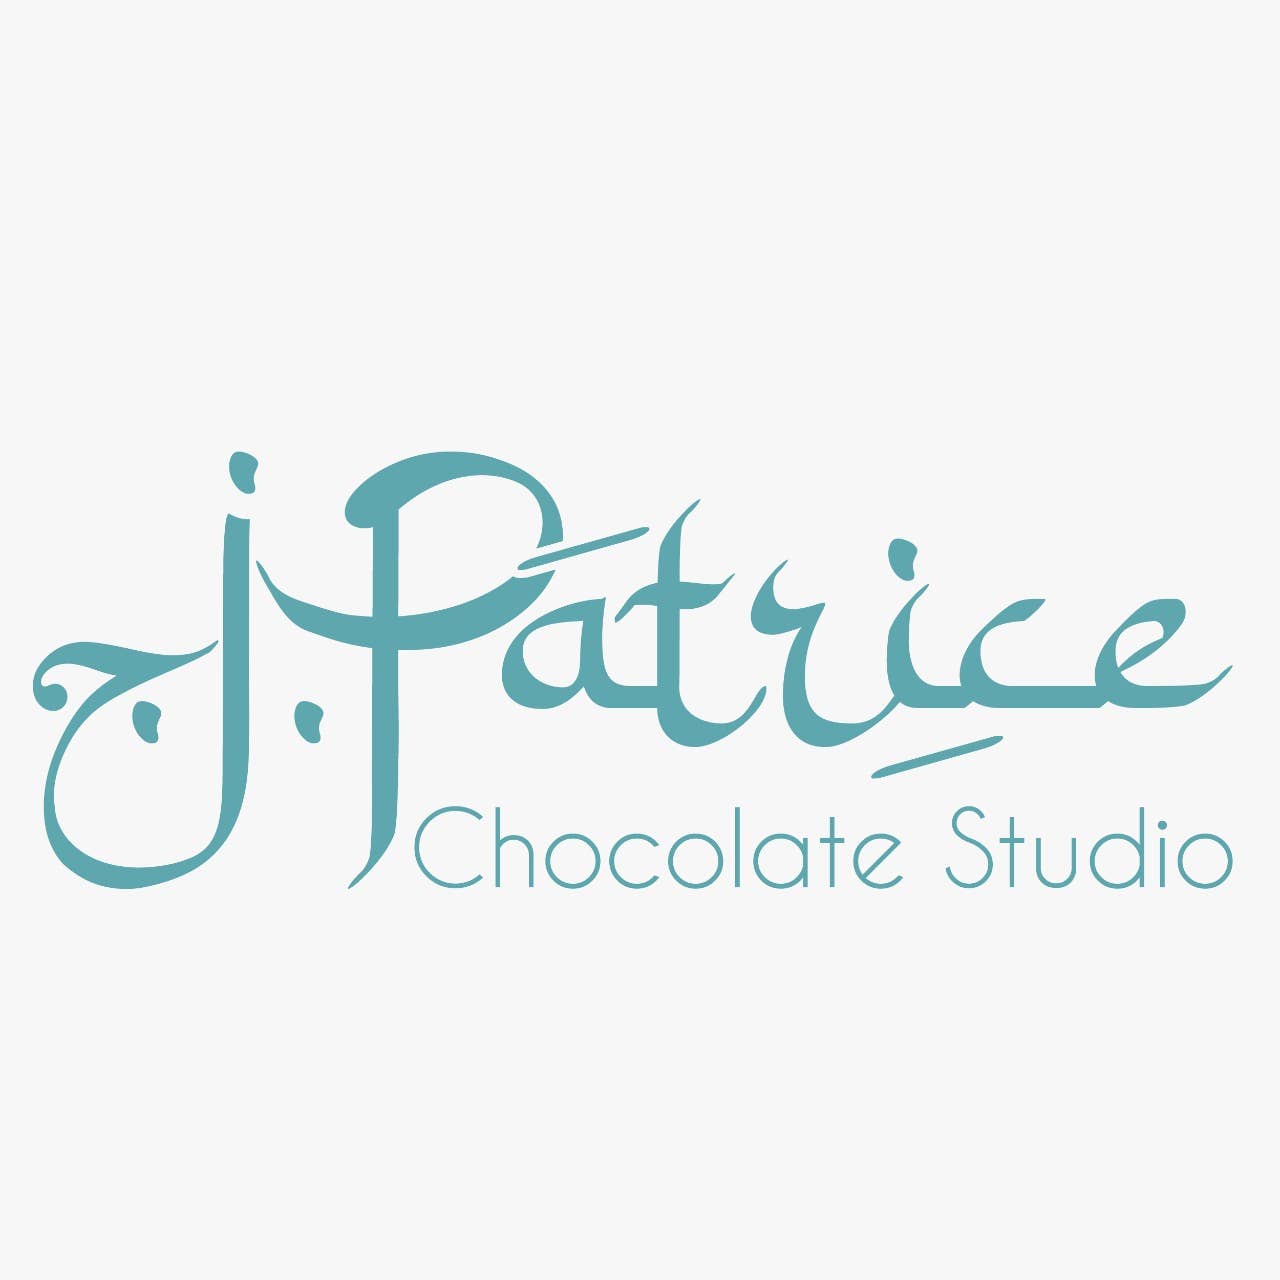 Toffee Nut Latte – J Patrice Chocolate Studio